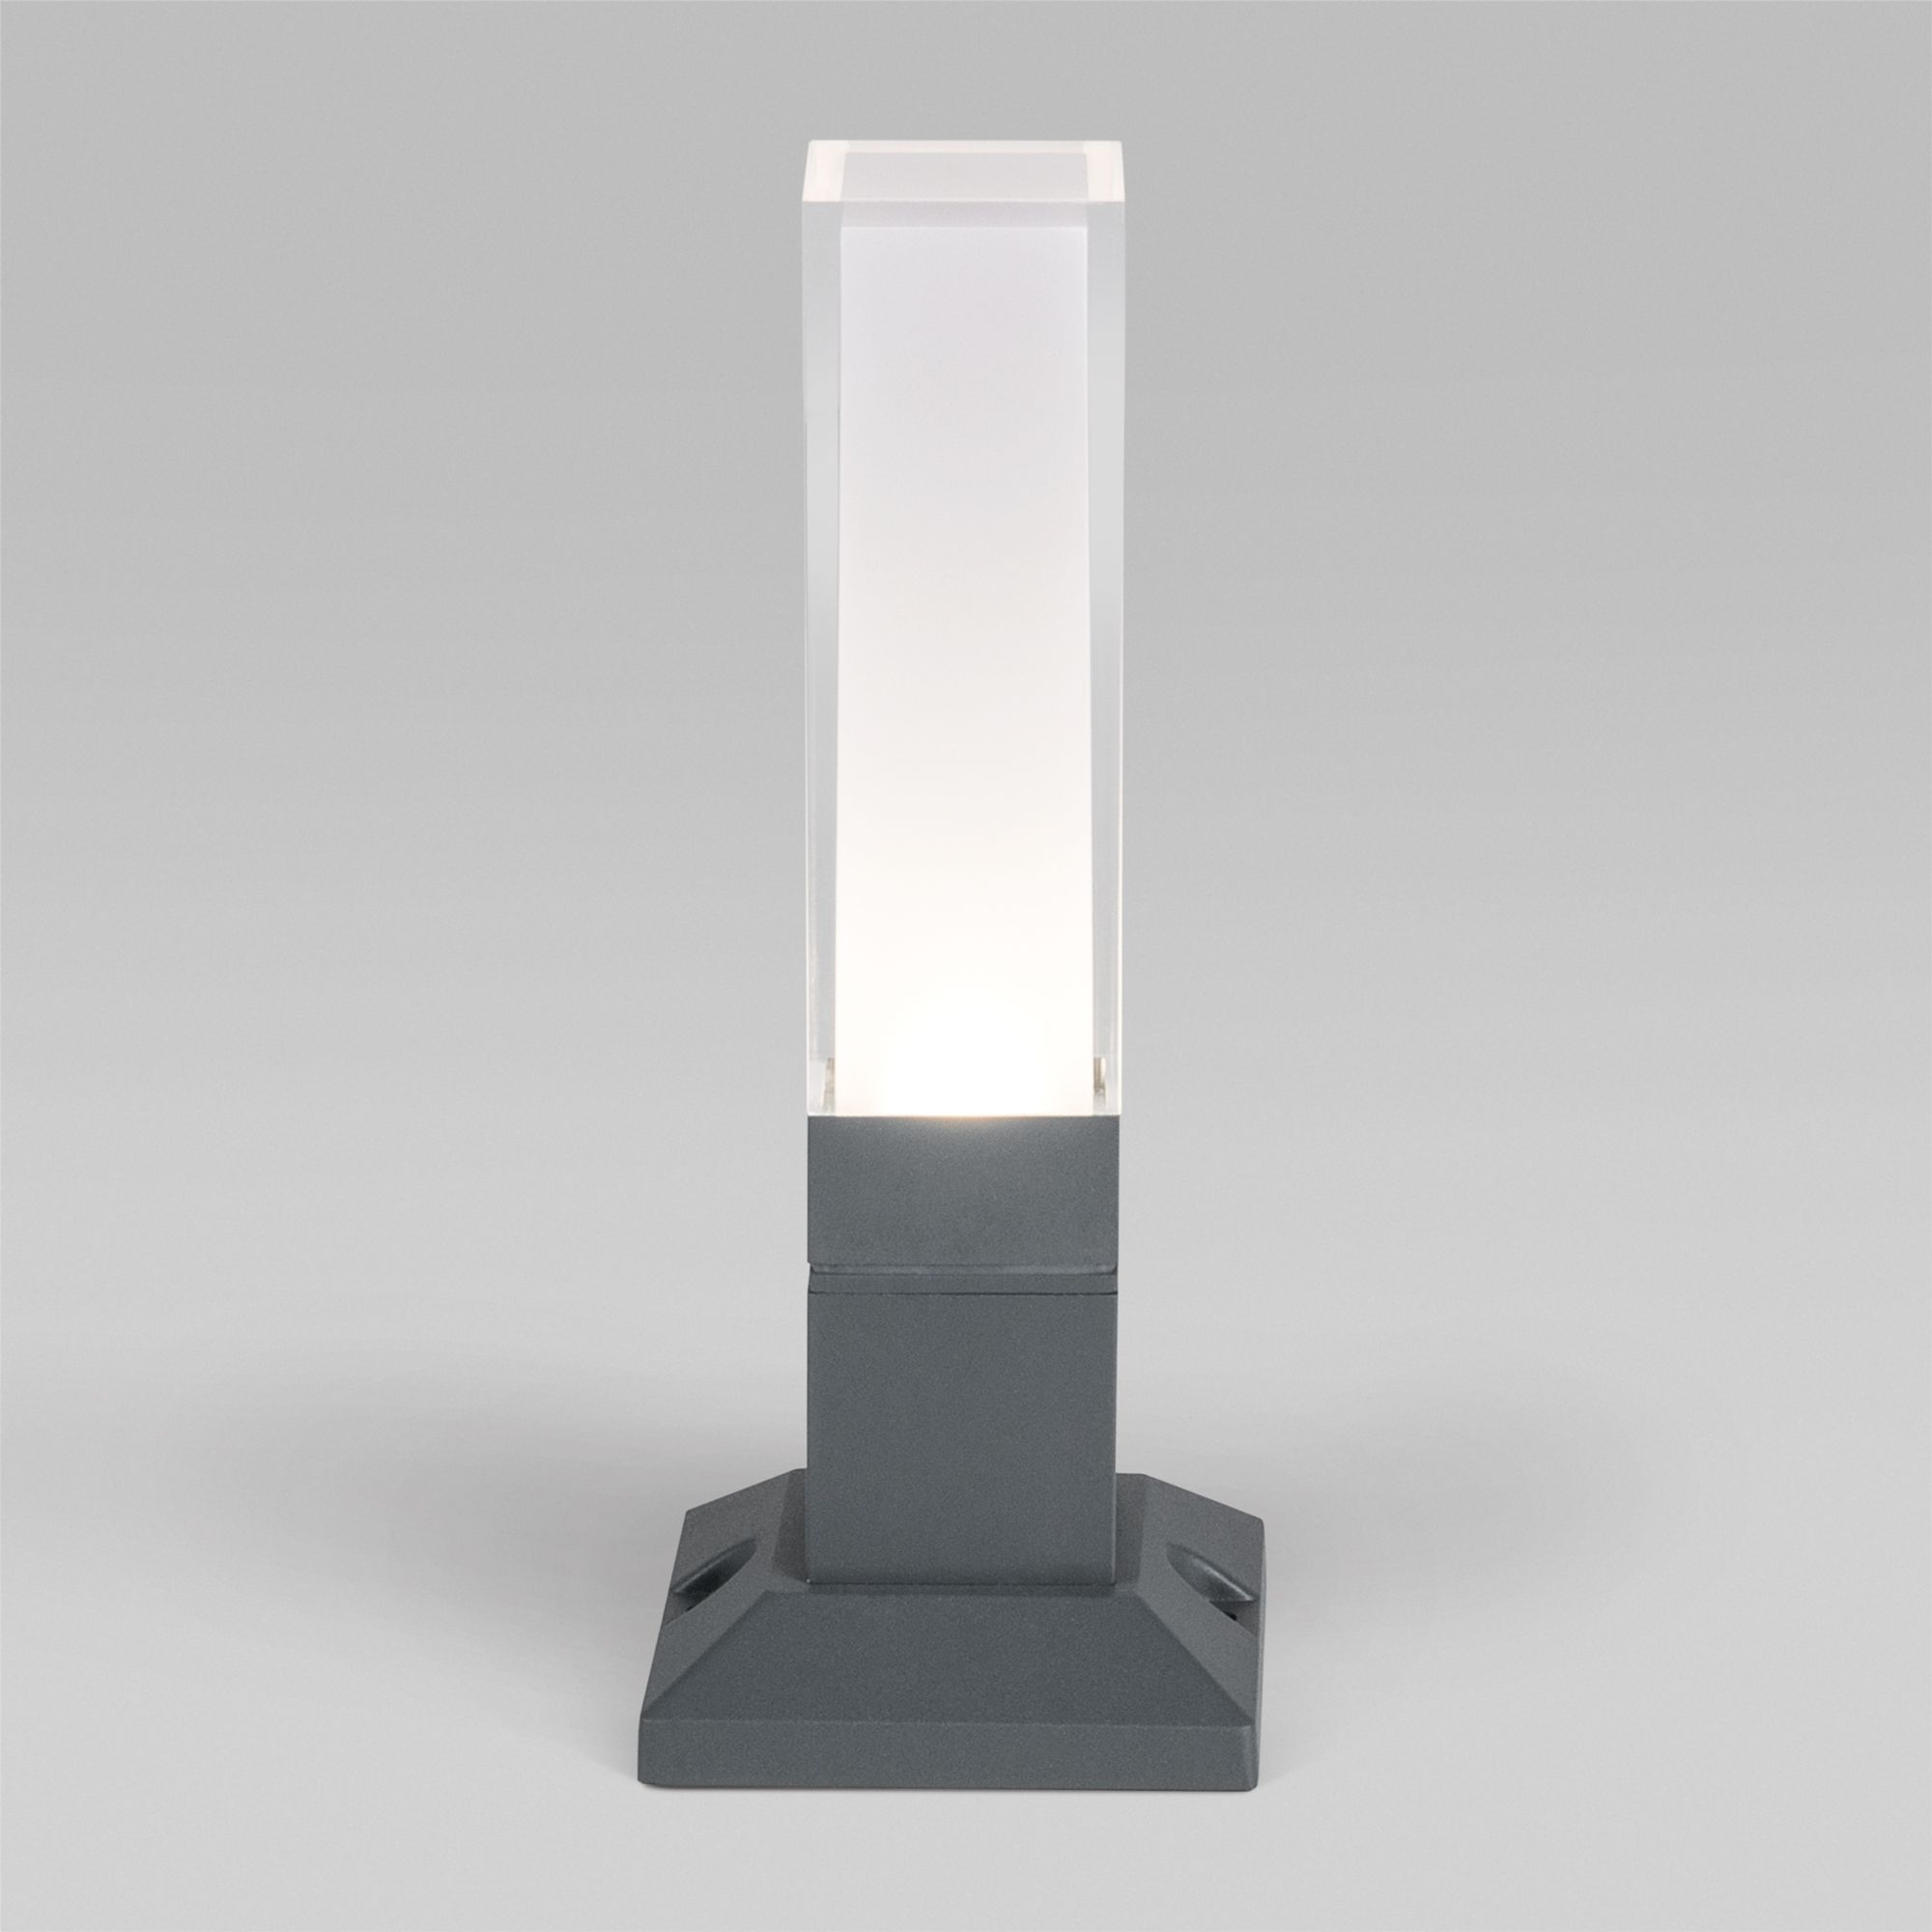 Ландшафтный светодиодный светильник серый IP54 1536 TECHNO LED